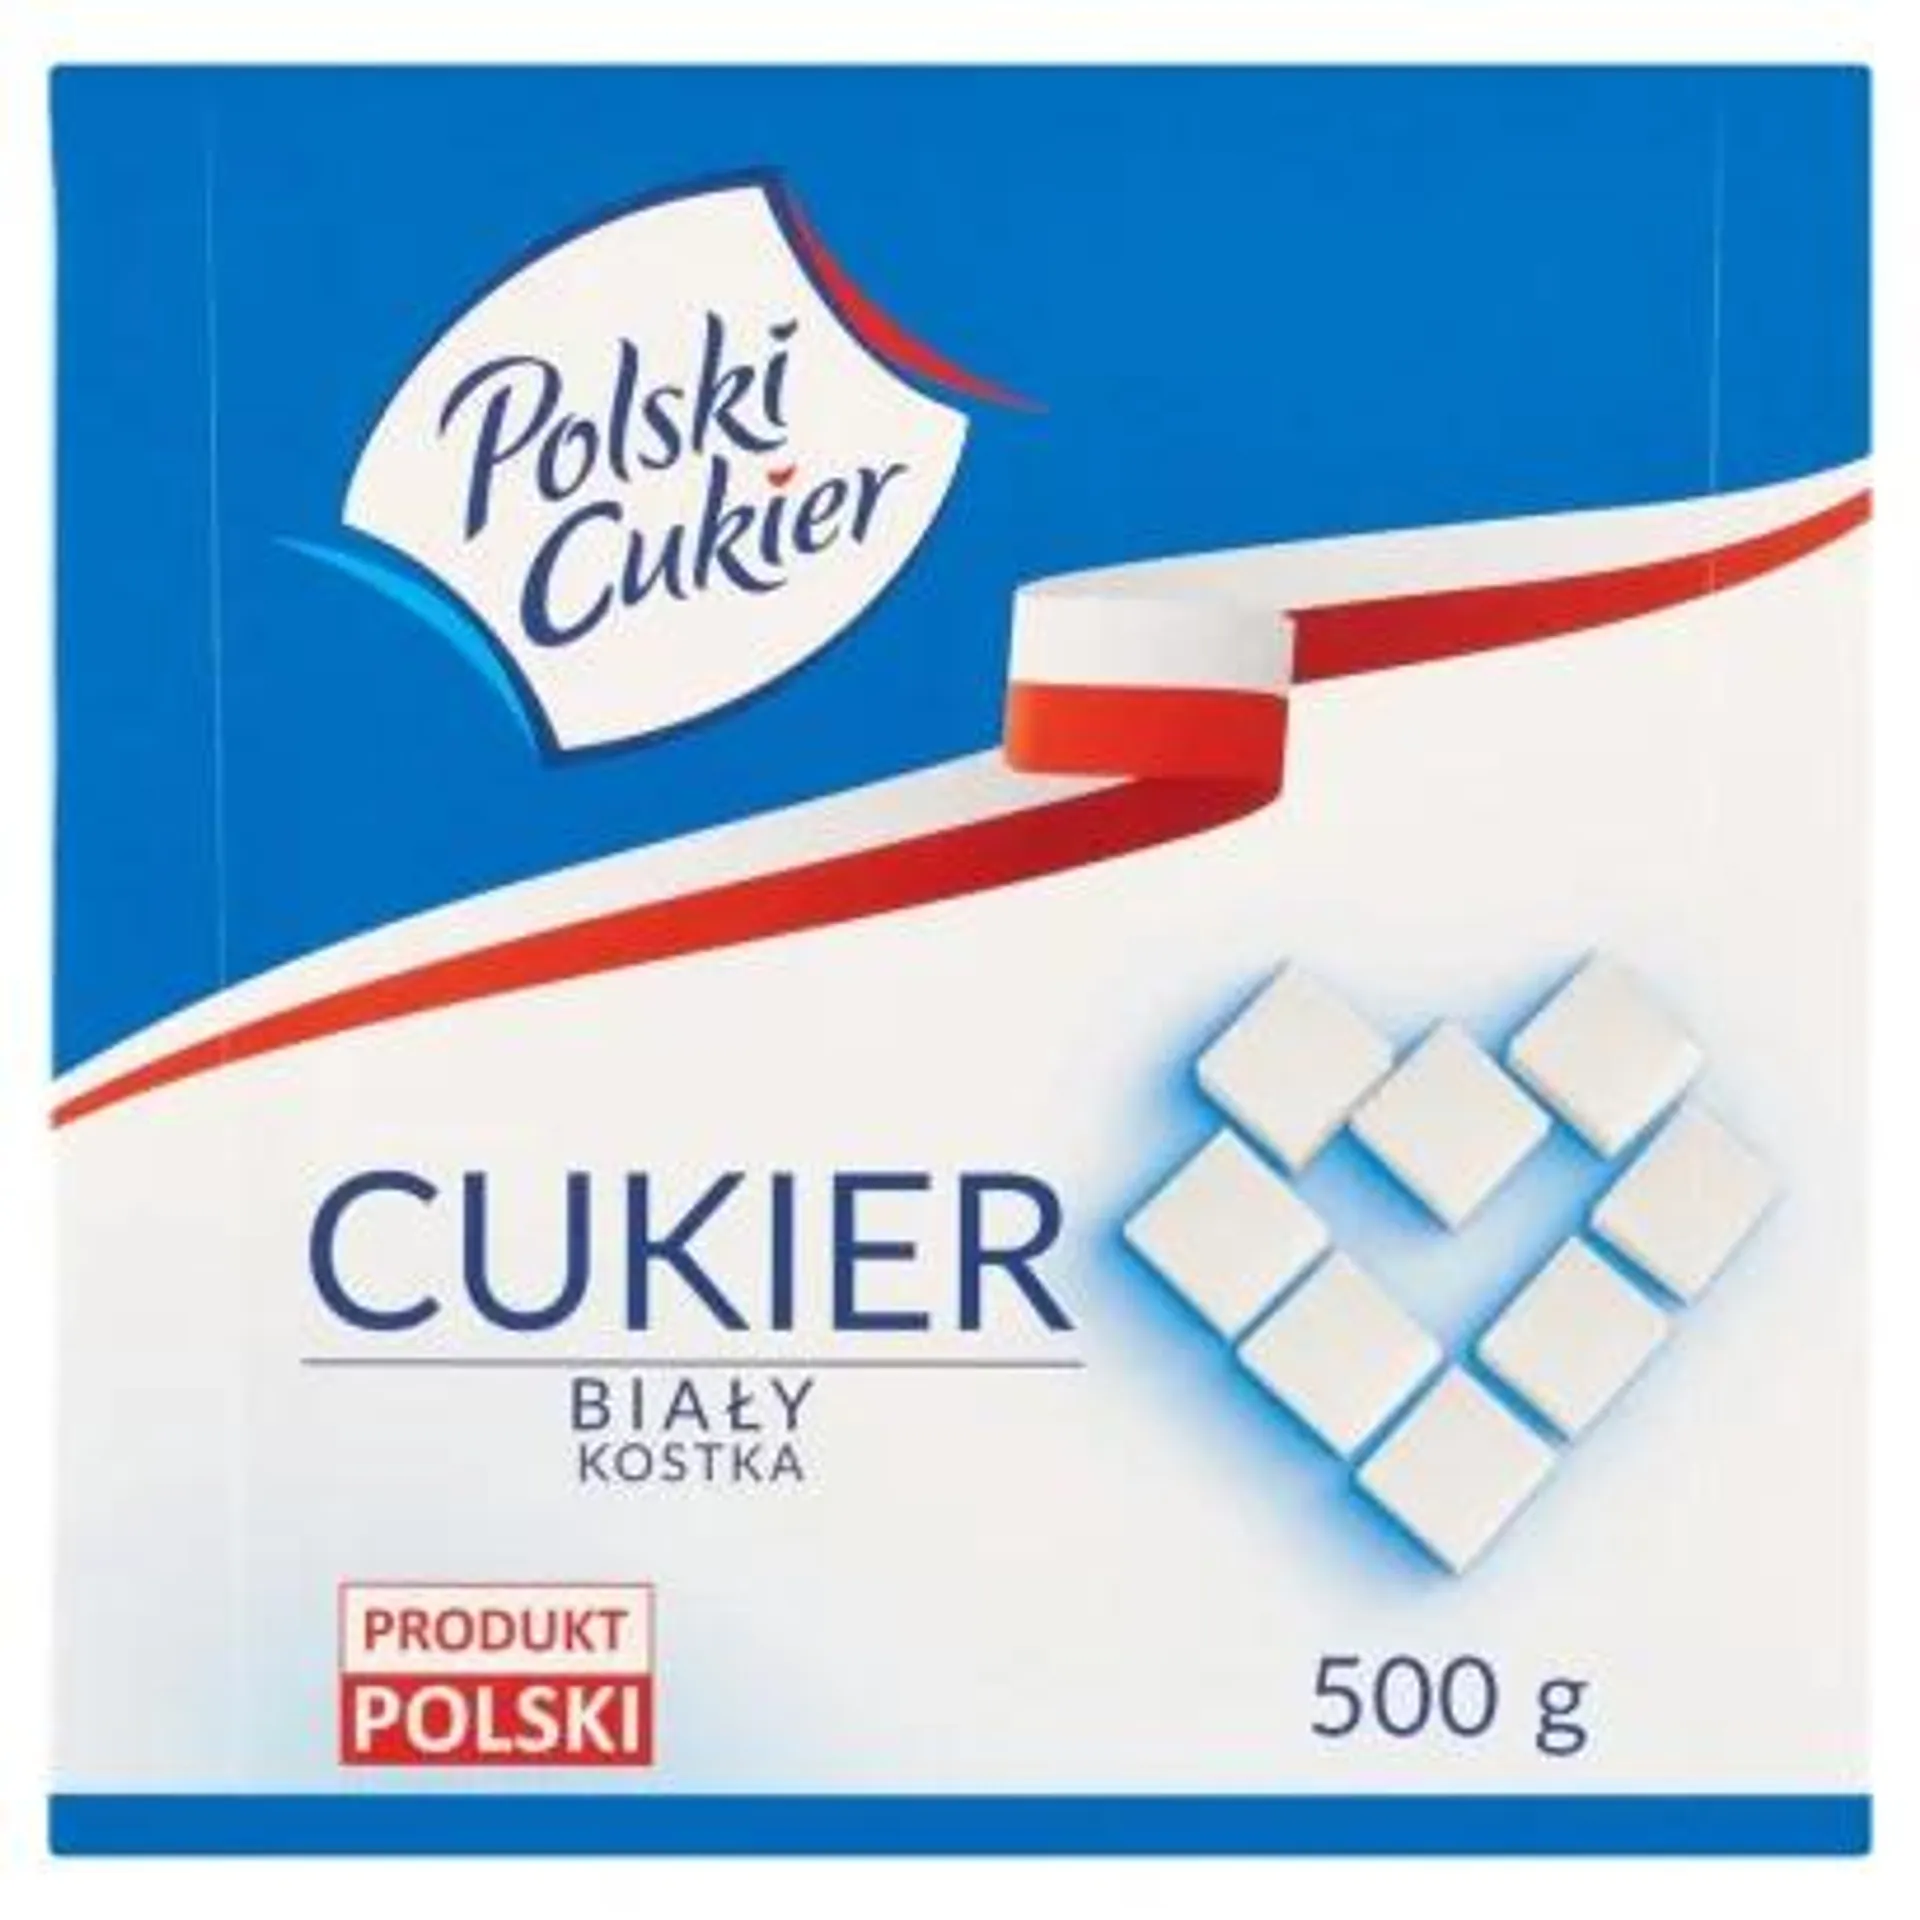 Polski Cukier - Cukier biały kostka